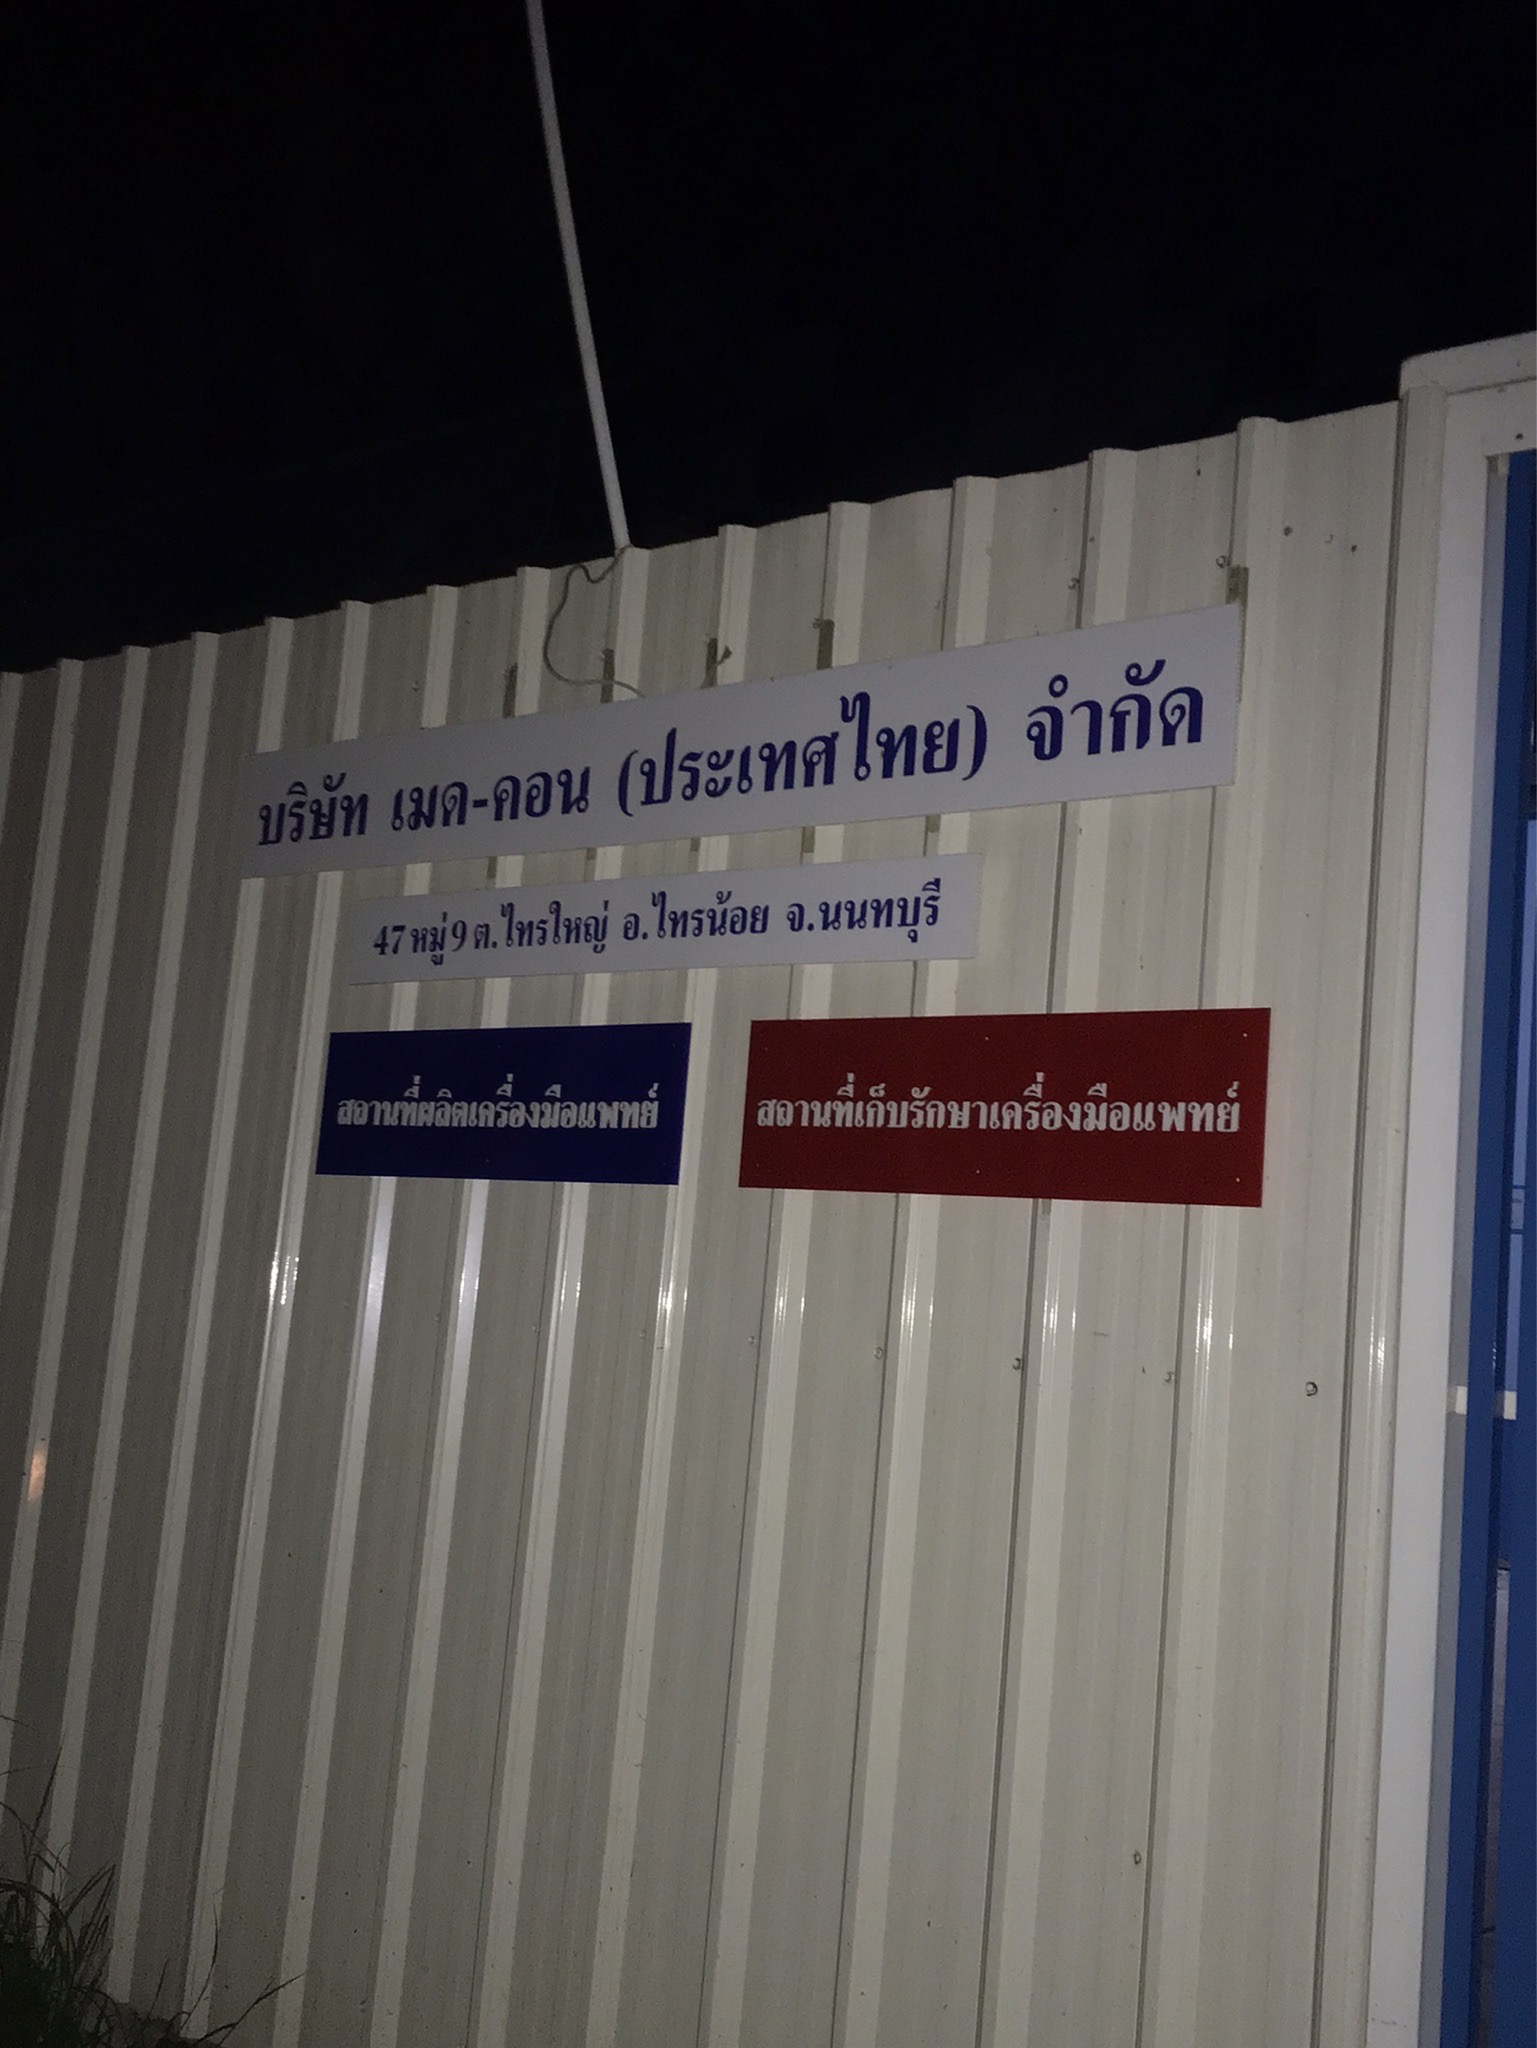 ติดตั้งผนังกั้นห้องน้ำ บริษัท เมด-คอน (ประเทศไทย) จำกัด สีเทา จังหวัดนนทบุรี